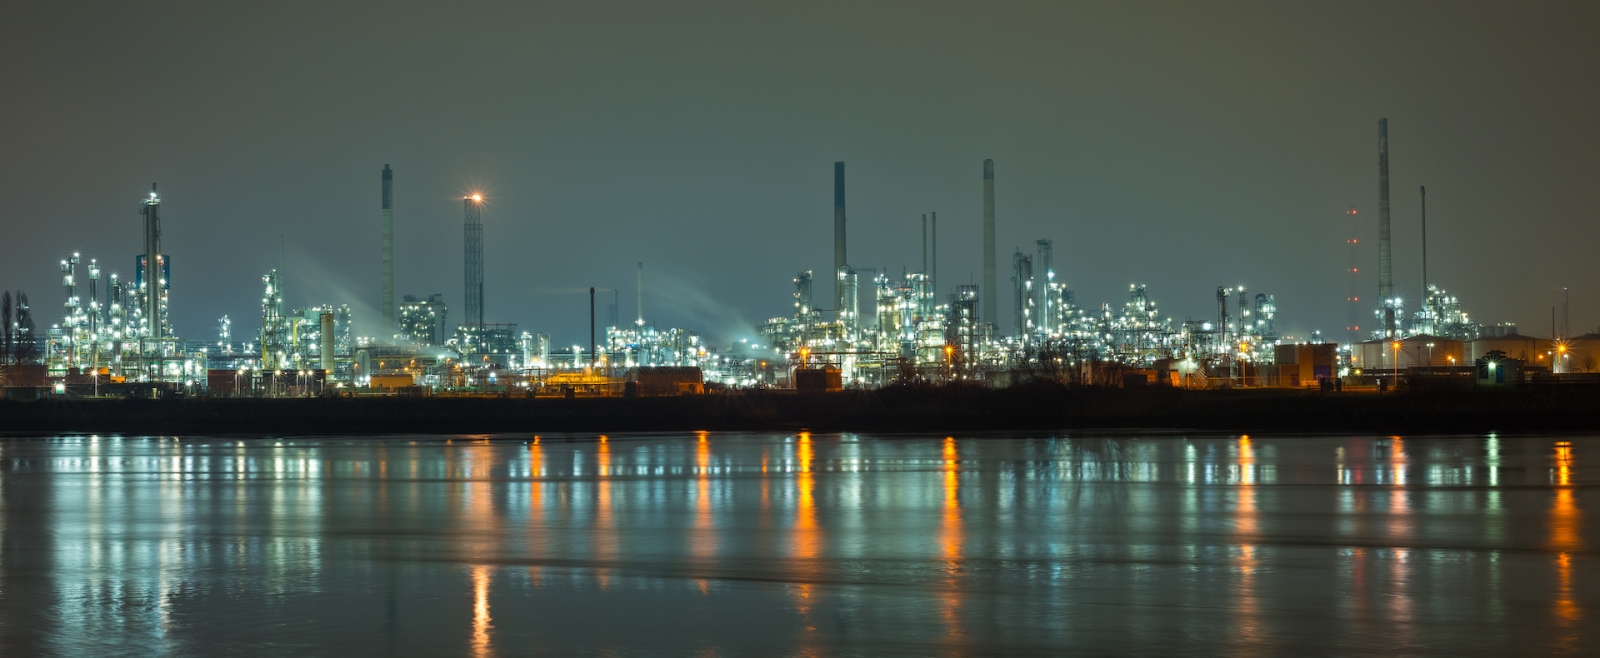 Panorama de l'industrie pétrochimique à Rotterdam, Pays-Bas la nuit